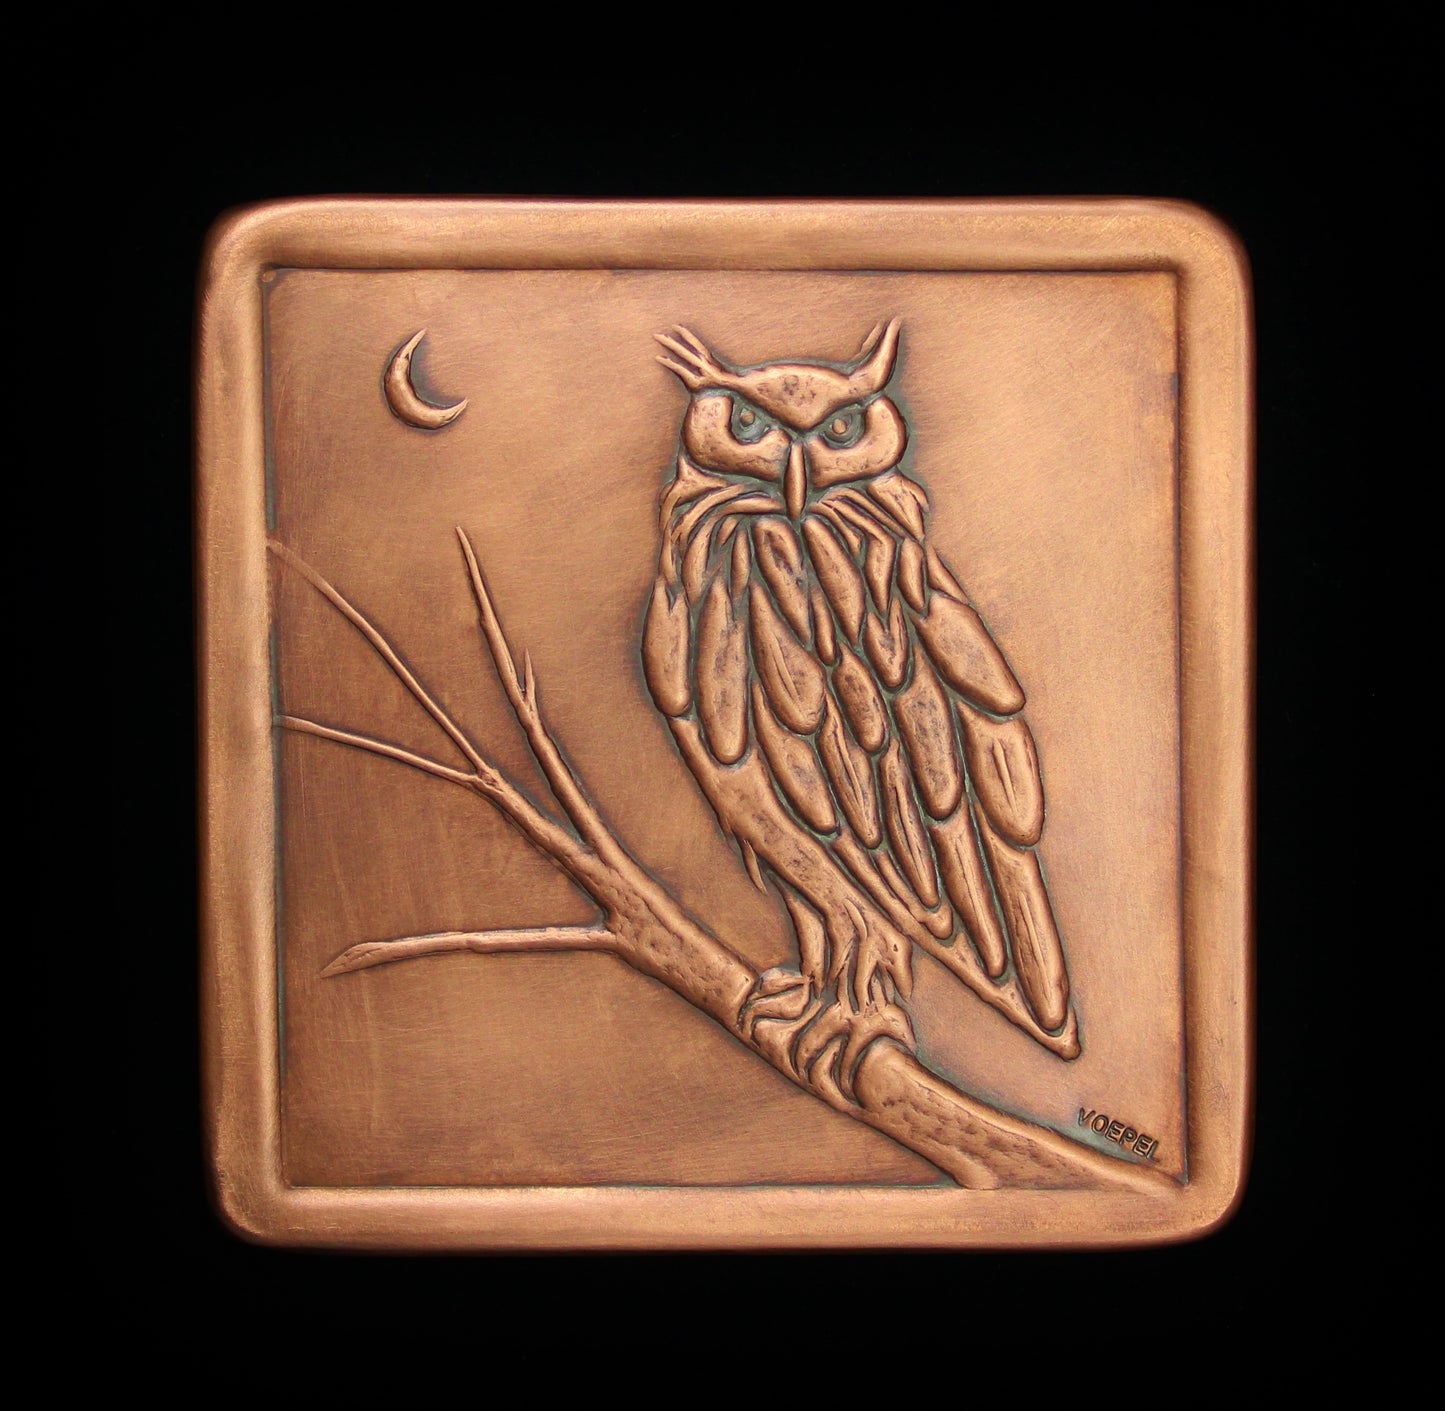 Handmade Copper Owl Tile, 6"x 6" x 1/4"